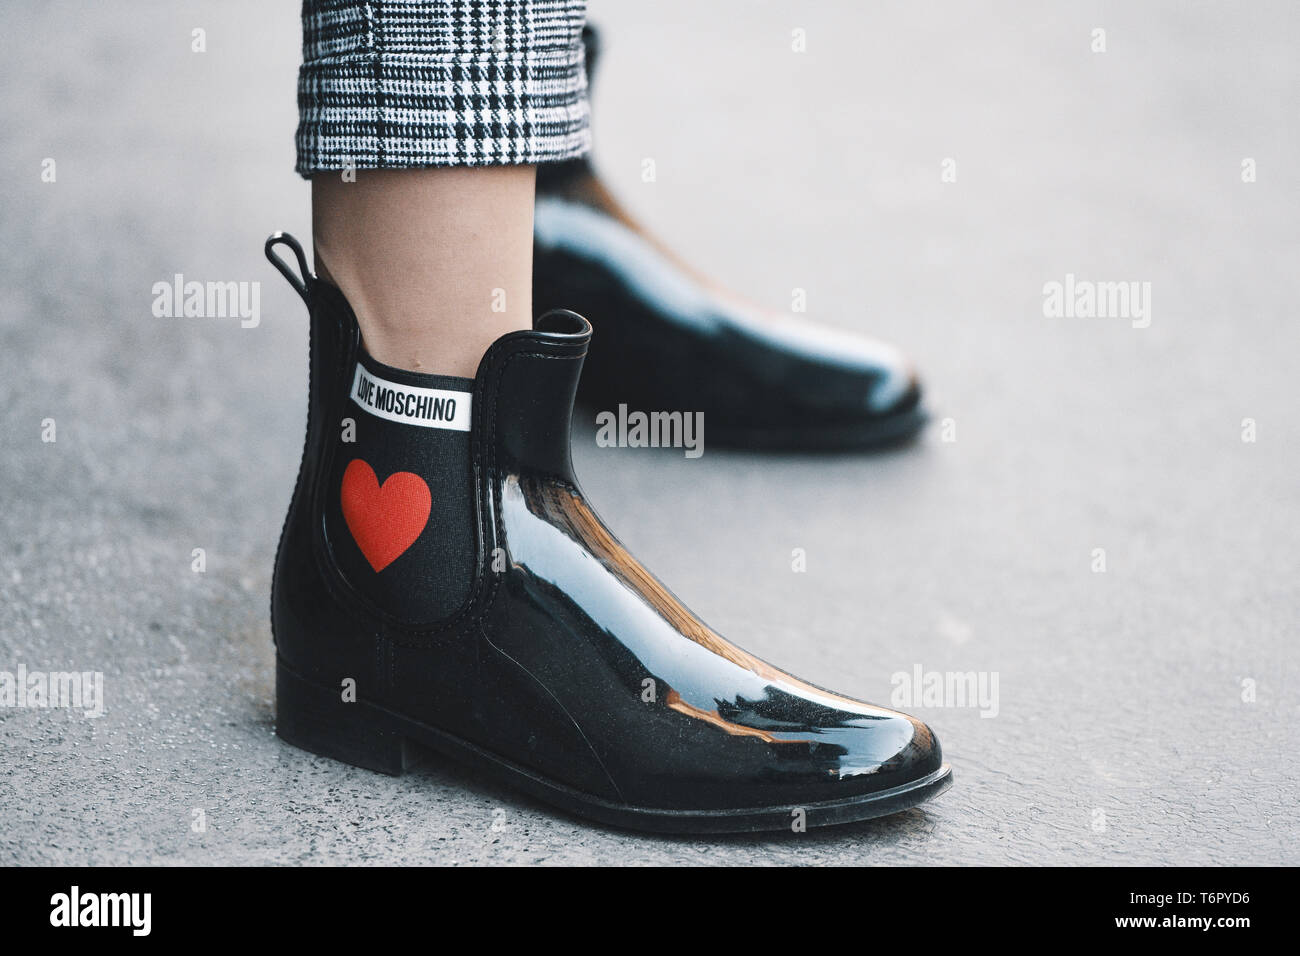 Milano, Italia - 24 Febbraio 2019: Street style - Moschino stivali dettaglio dopo una sfilata di moda durante la Settimana della Moda Milanese - MFWFW19 Foto Stock